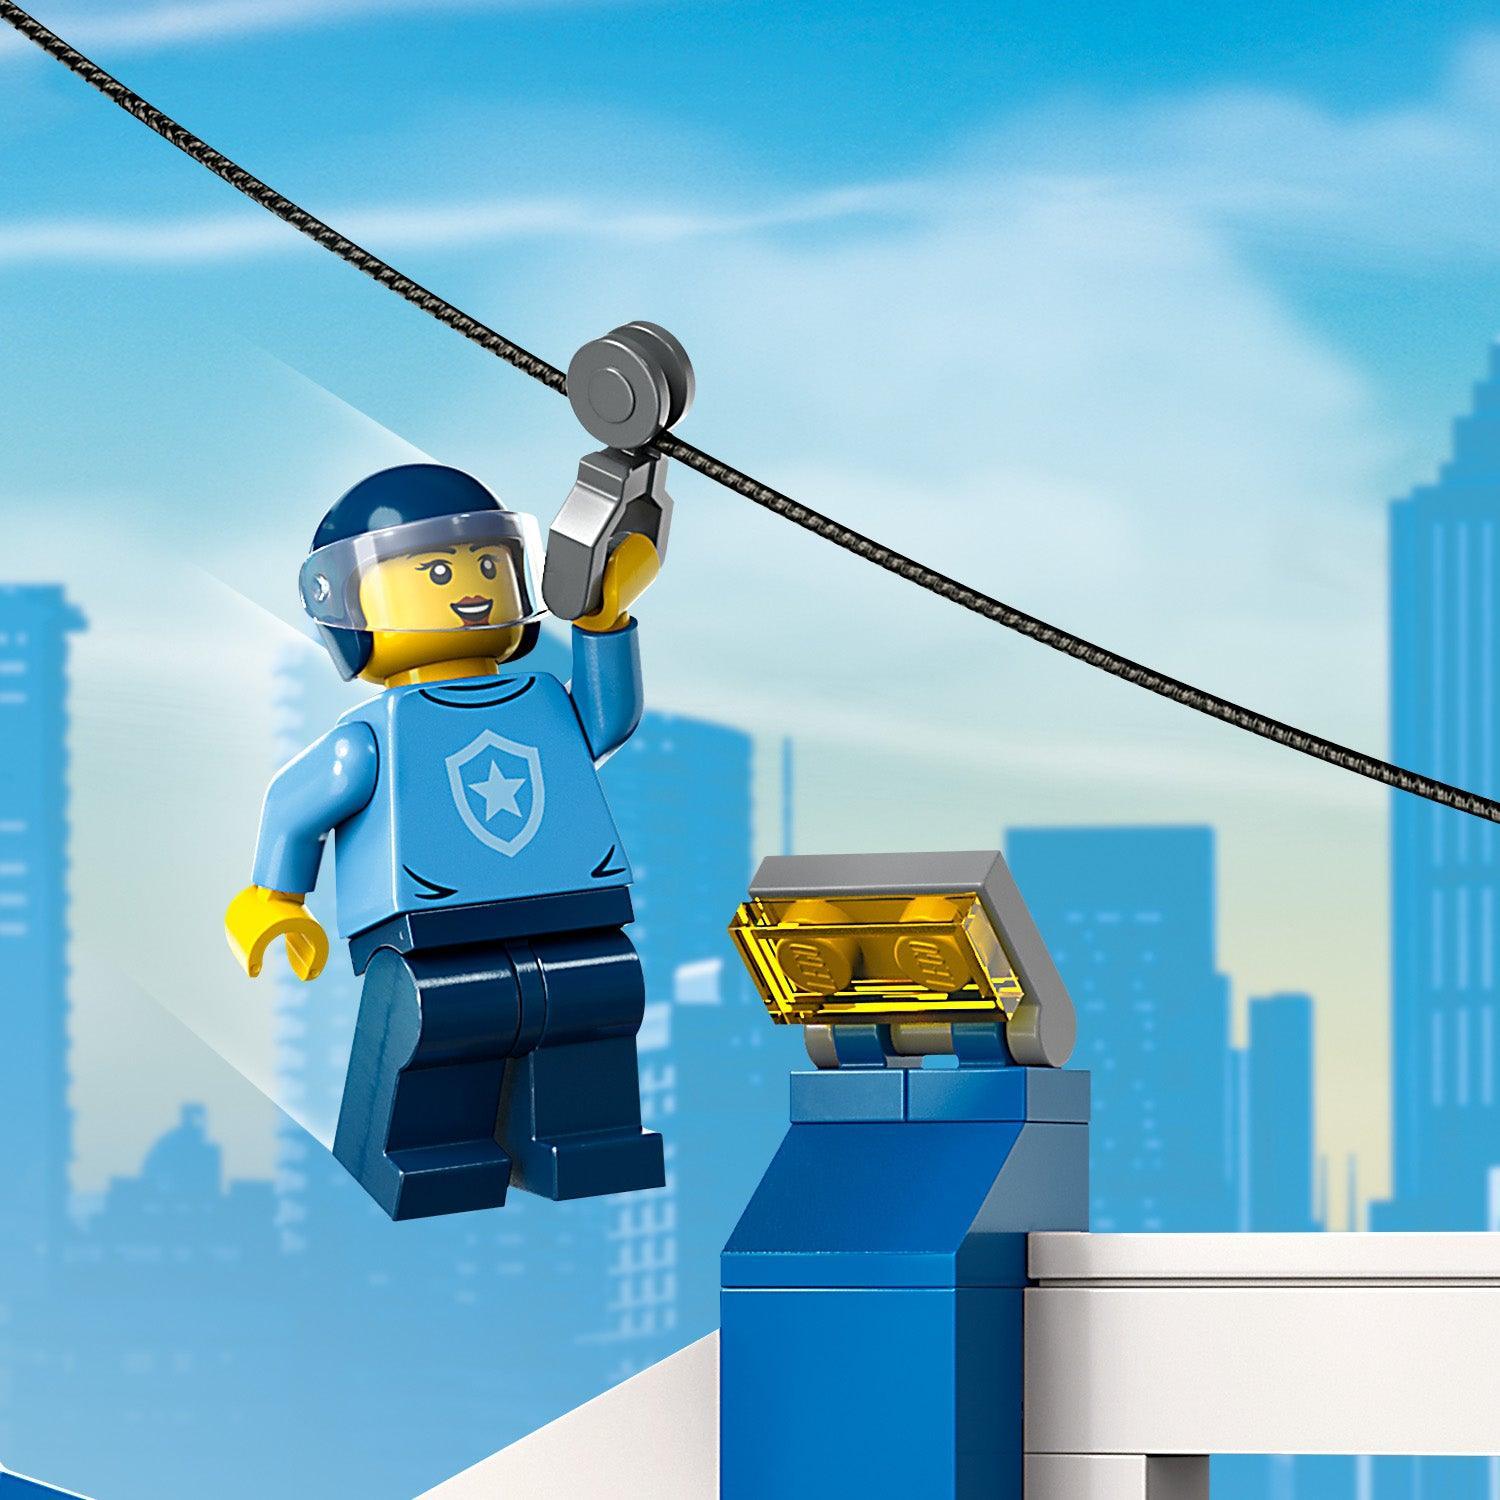 LEGO Politie opleidingsacademie 60372 City | 2TTOYS ✓ Official shop<br>